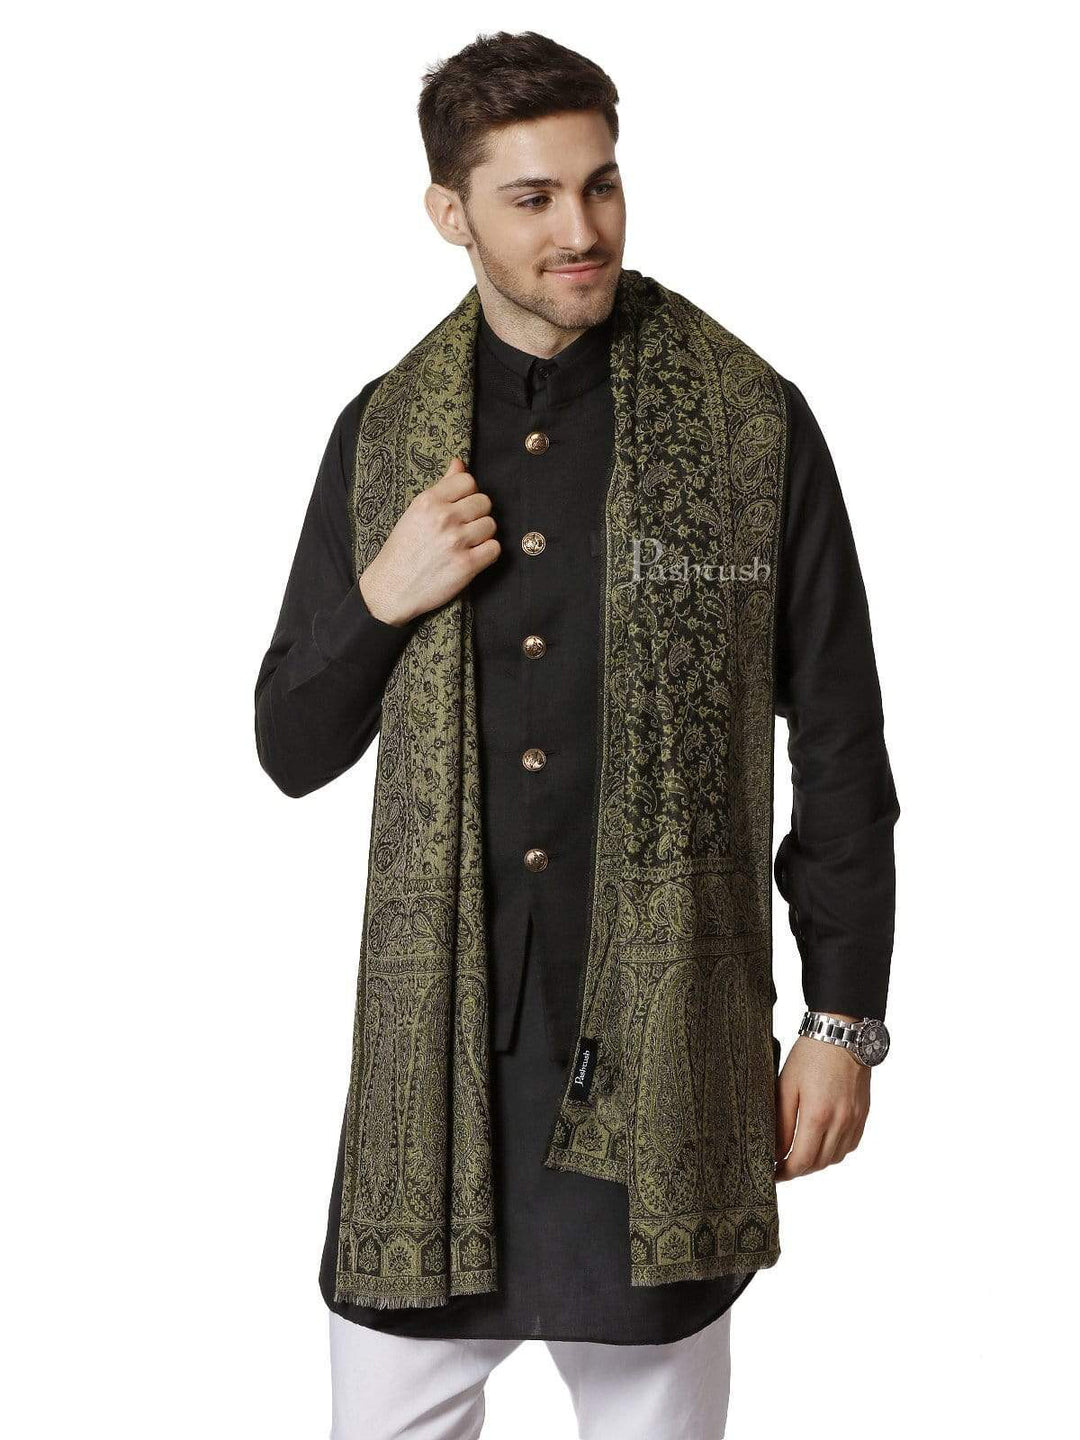 Pashtush India 70x200 Pashtush Mens Ethnic Weave Stole, Fine Wool